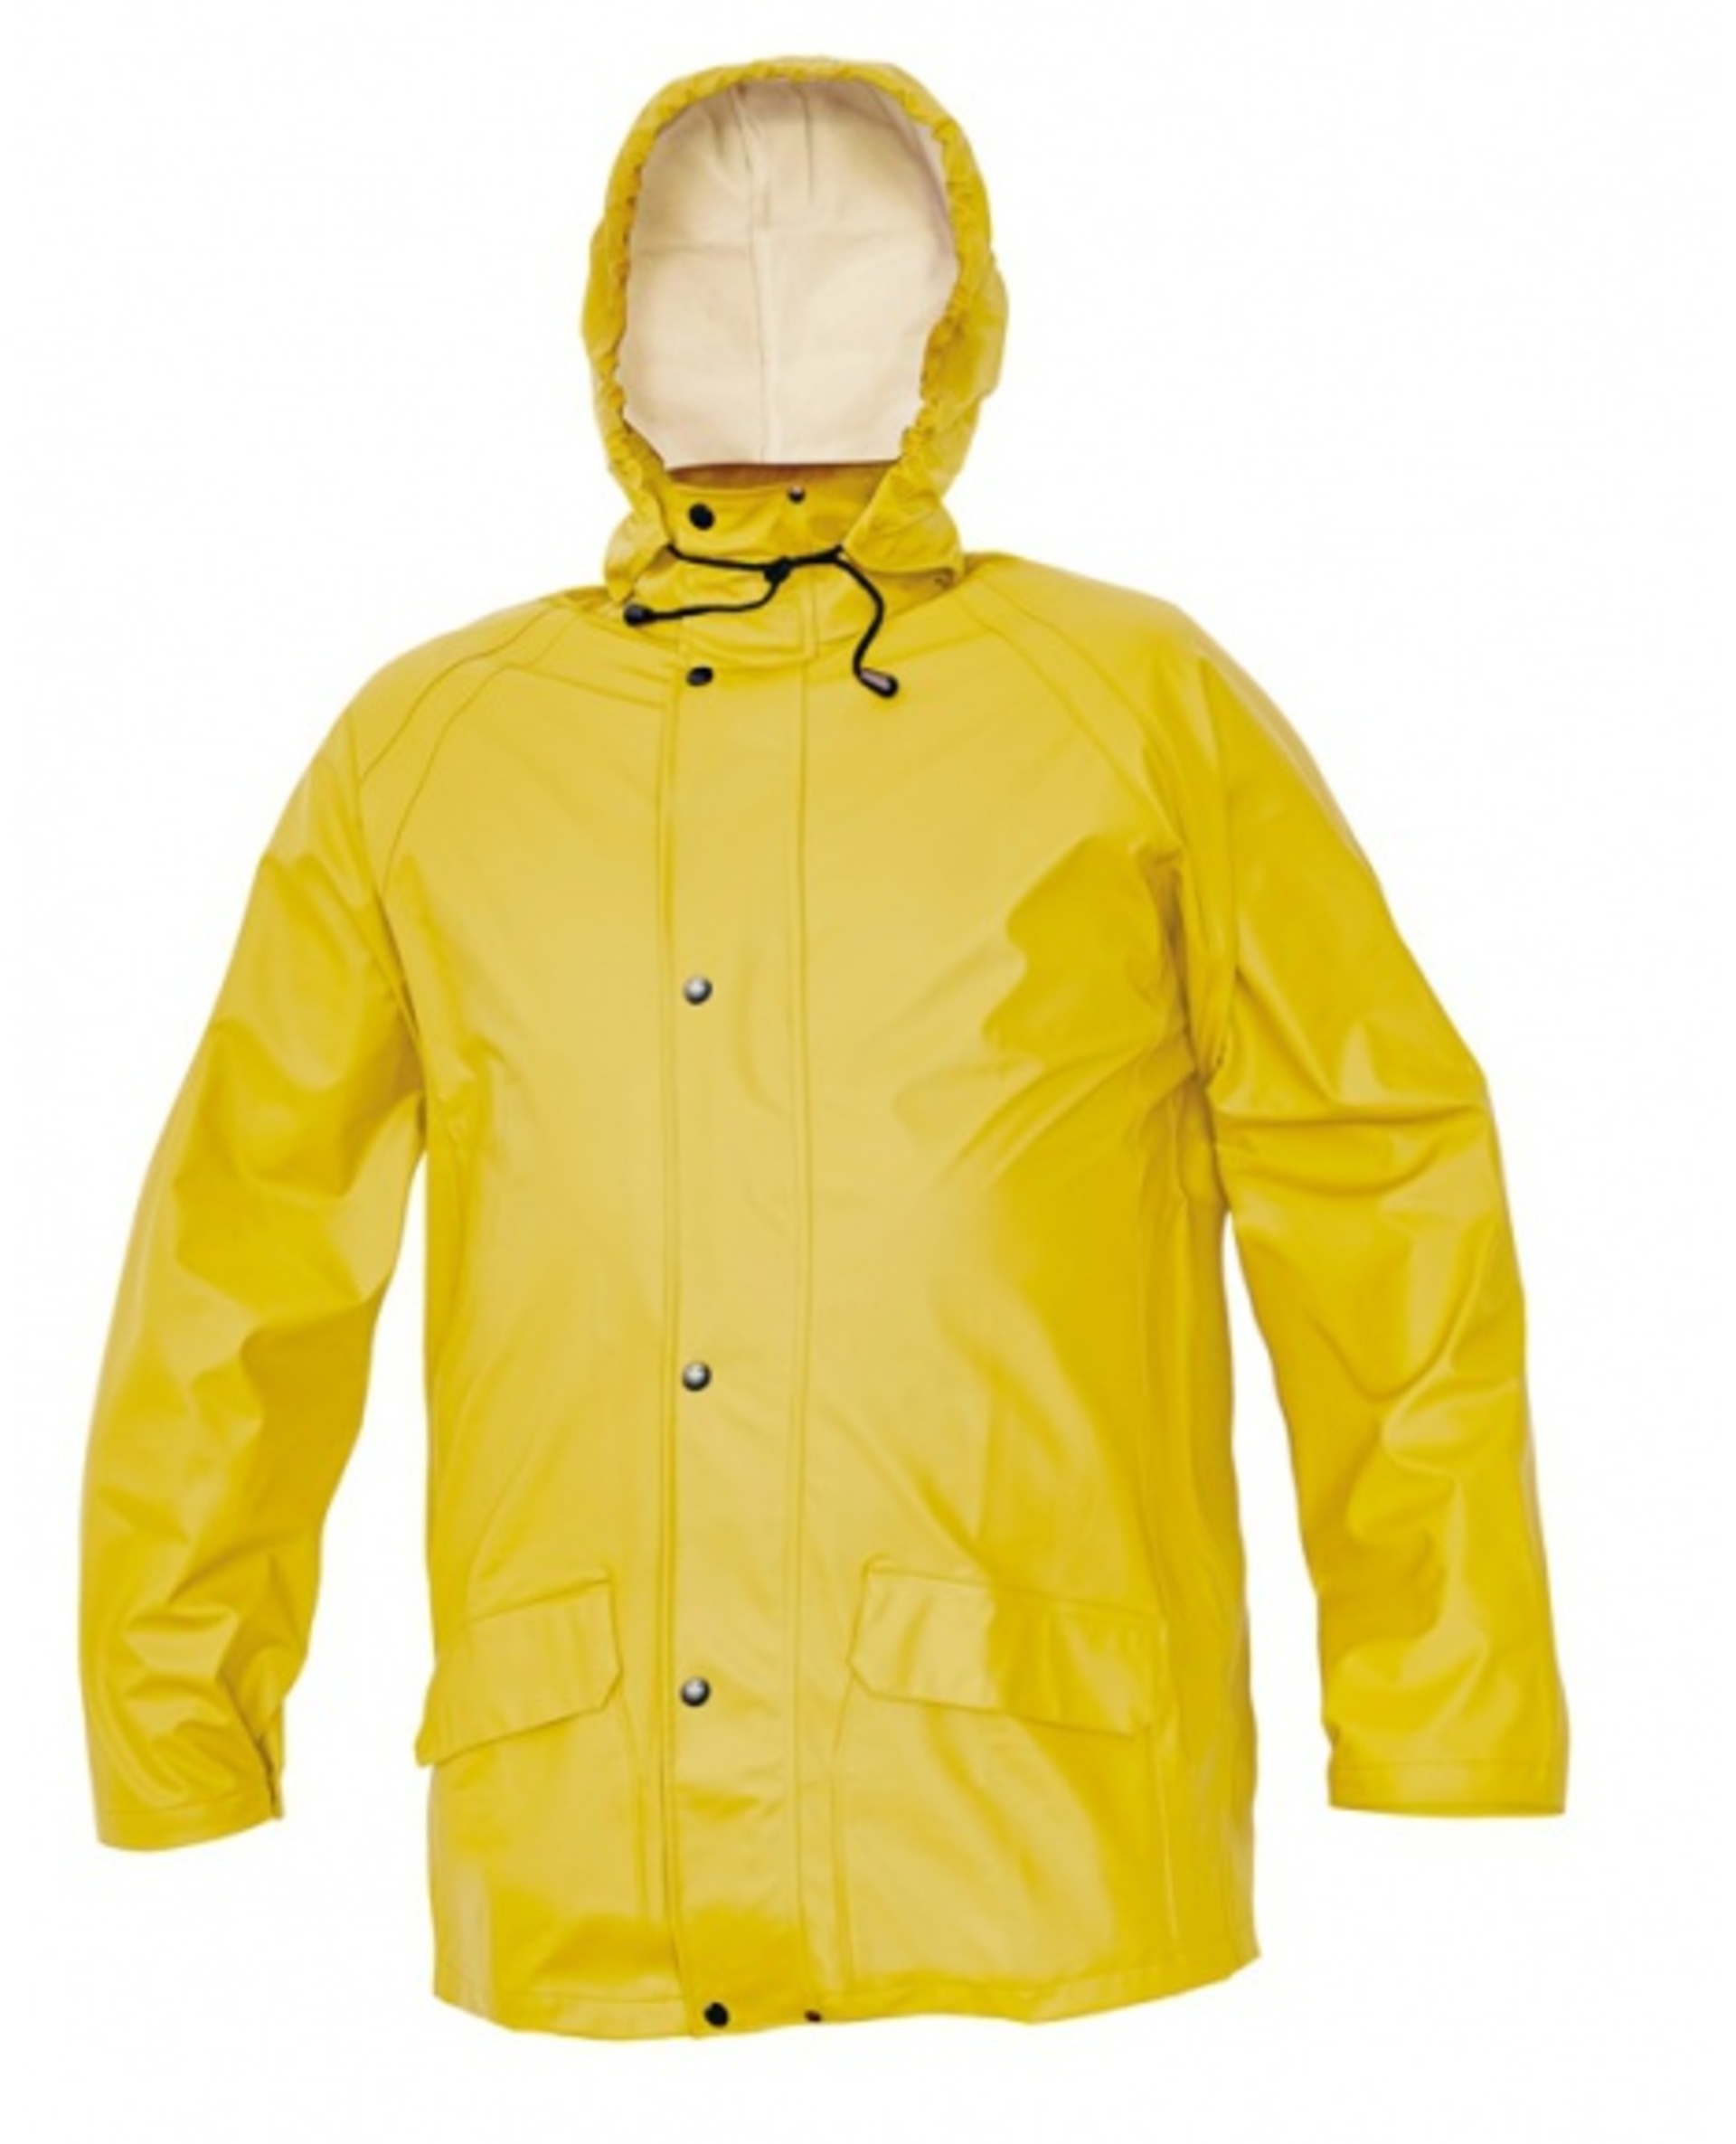 Cerva SIRET SET Oblek nepromokavý žlutá L + Bezplatné vrácení zboží